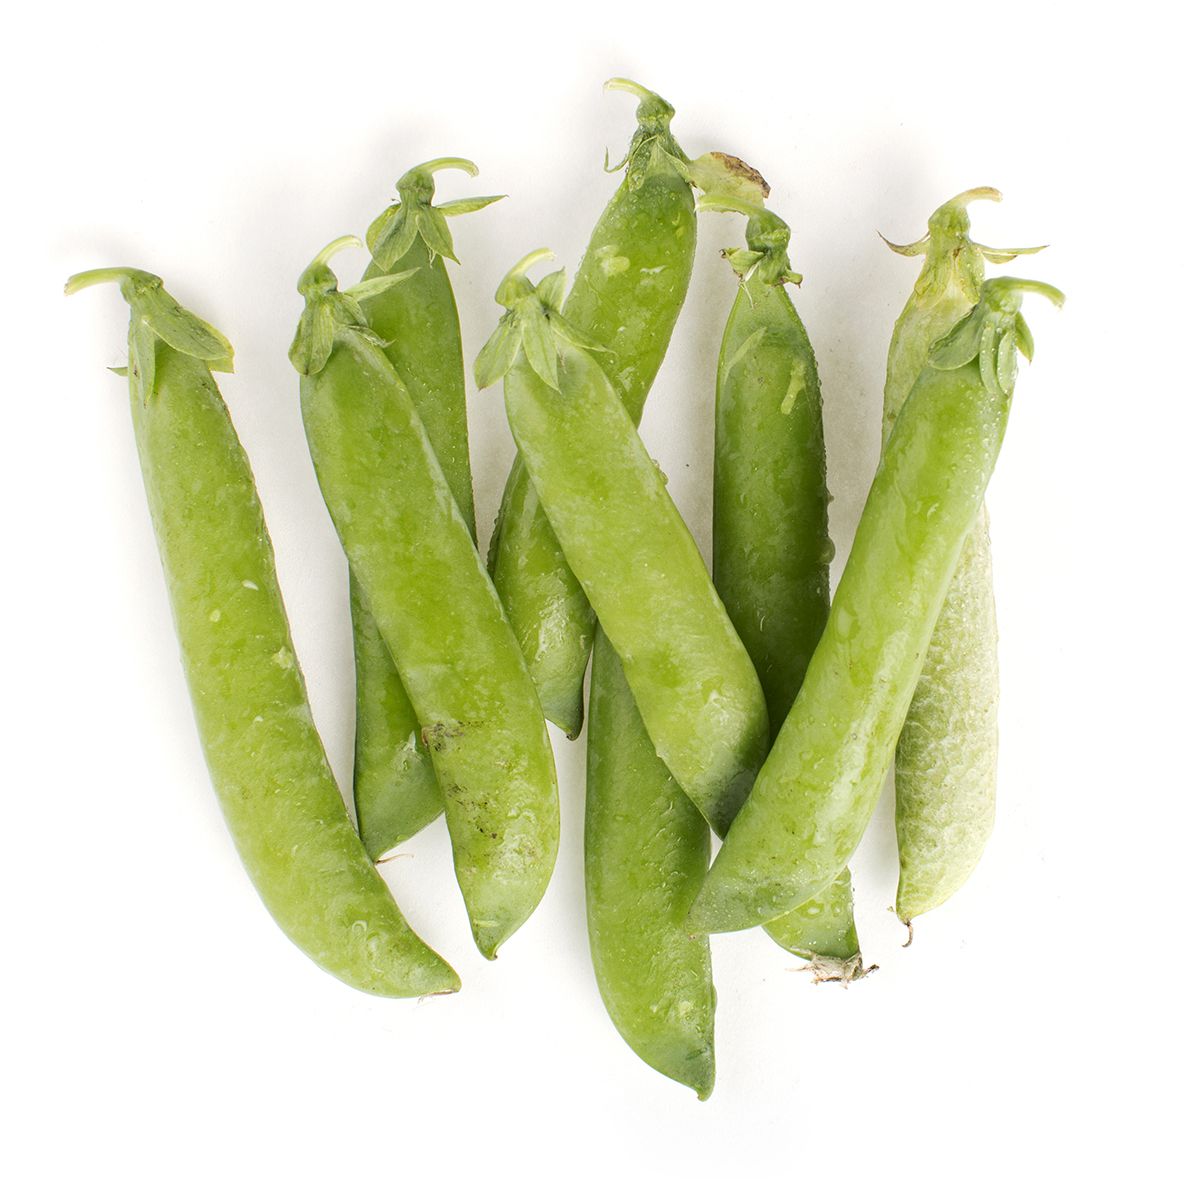 BoxNCase English Peas